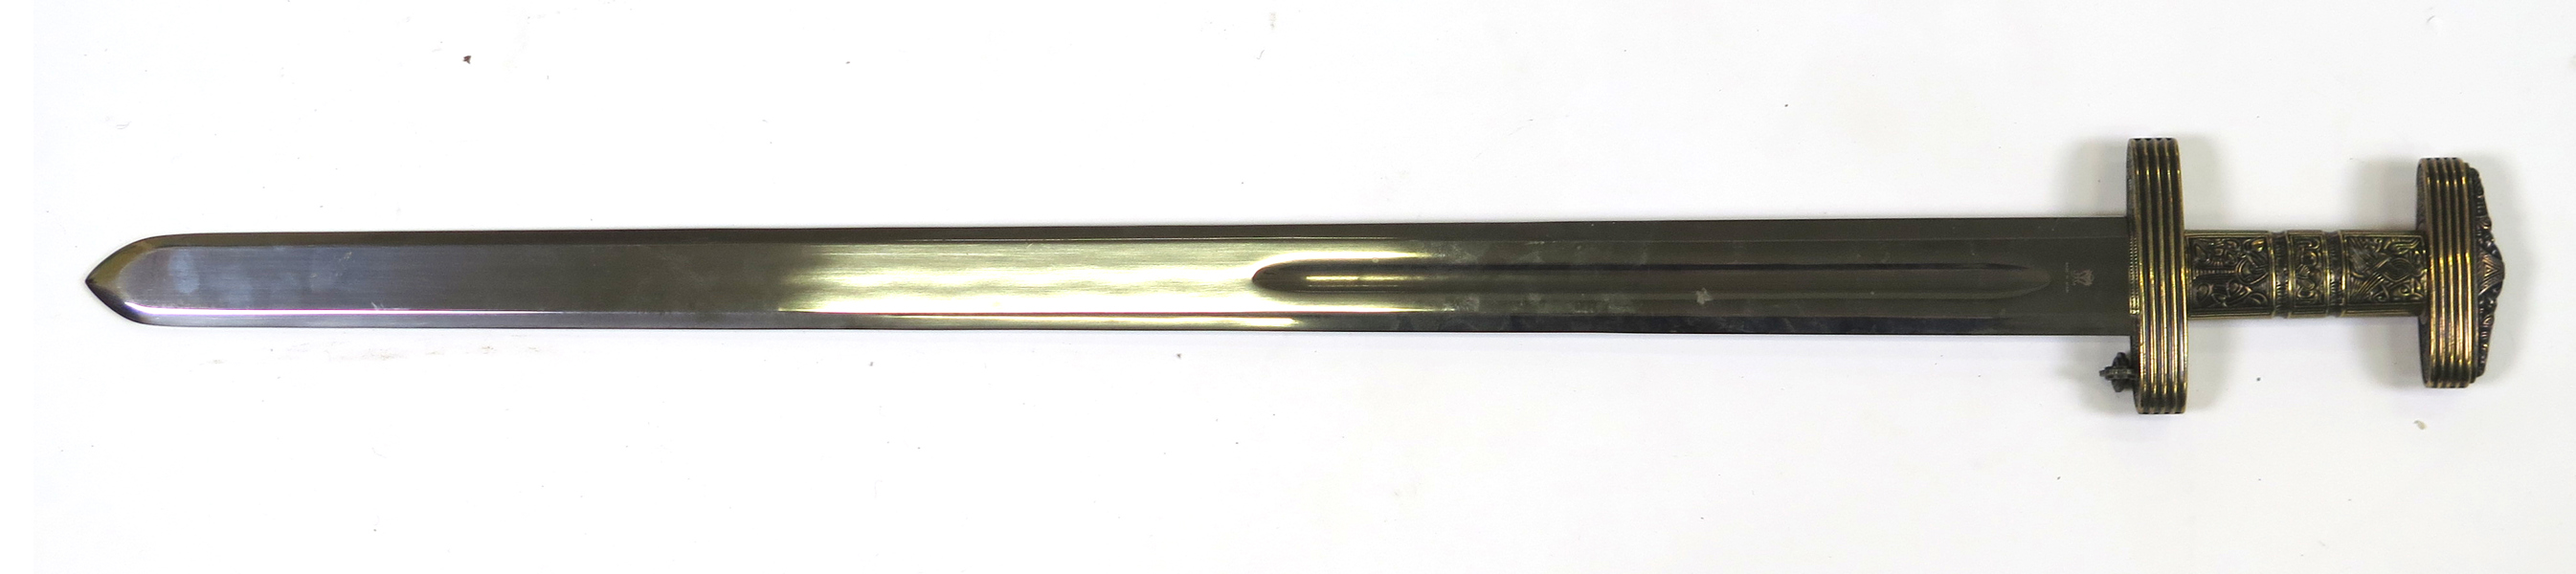 Svärd, stål med mässingsfäste, vendltidsstil, Spanien modern tillverkning, l 94 cm_36341a_8dc295f1b56d1a5_lg.jpeg